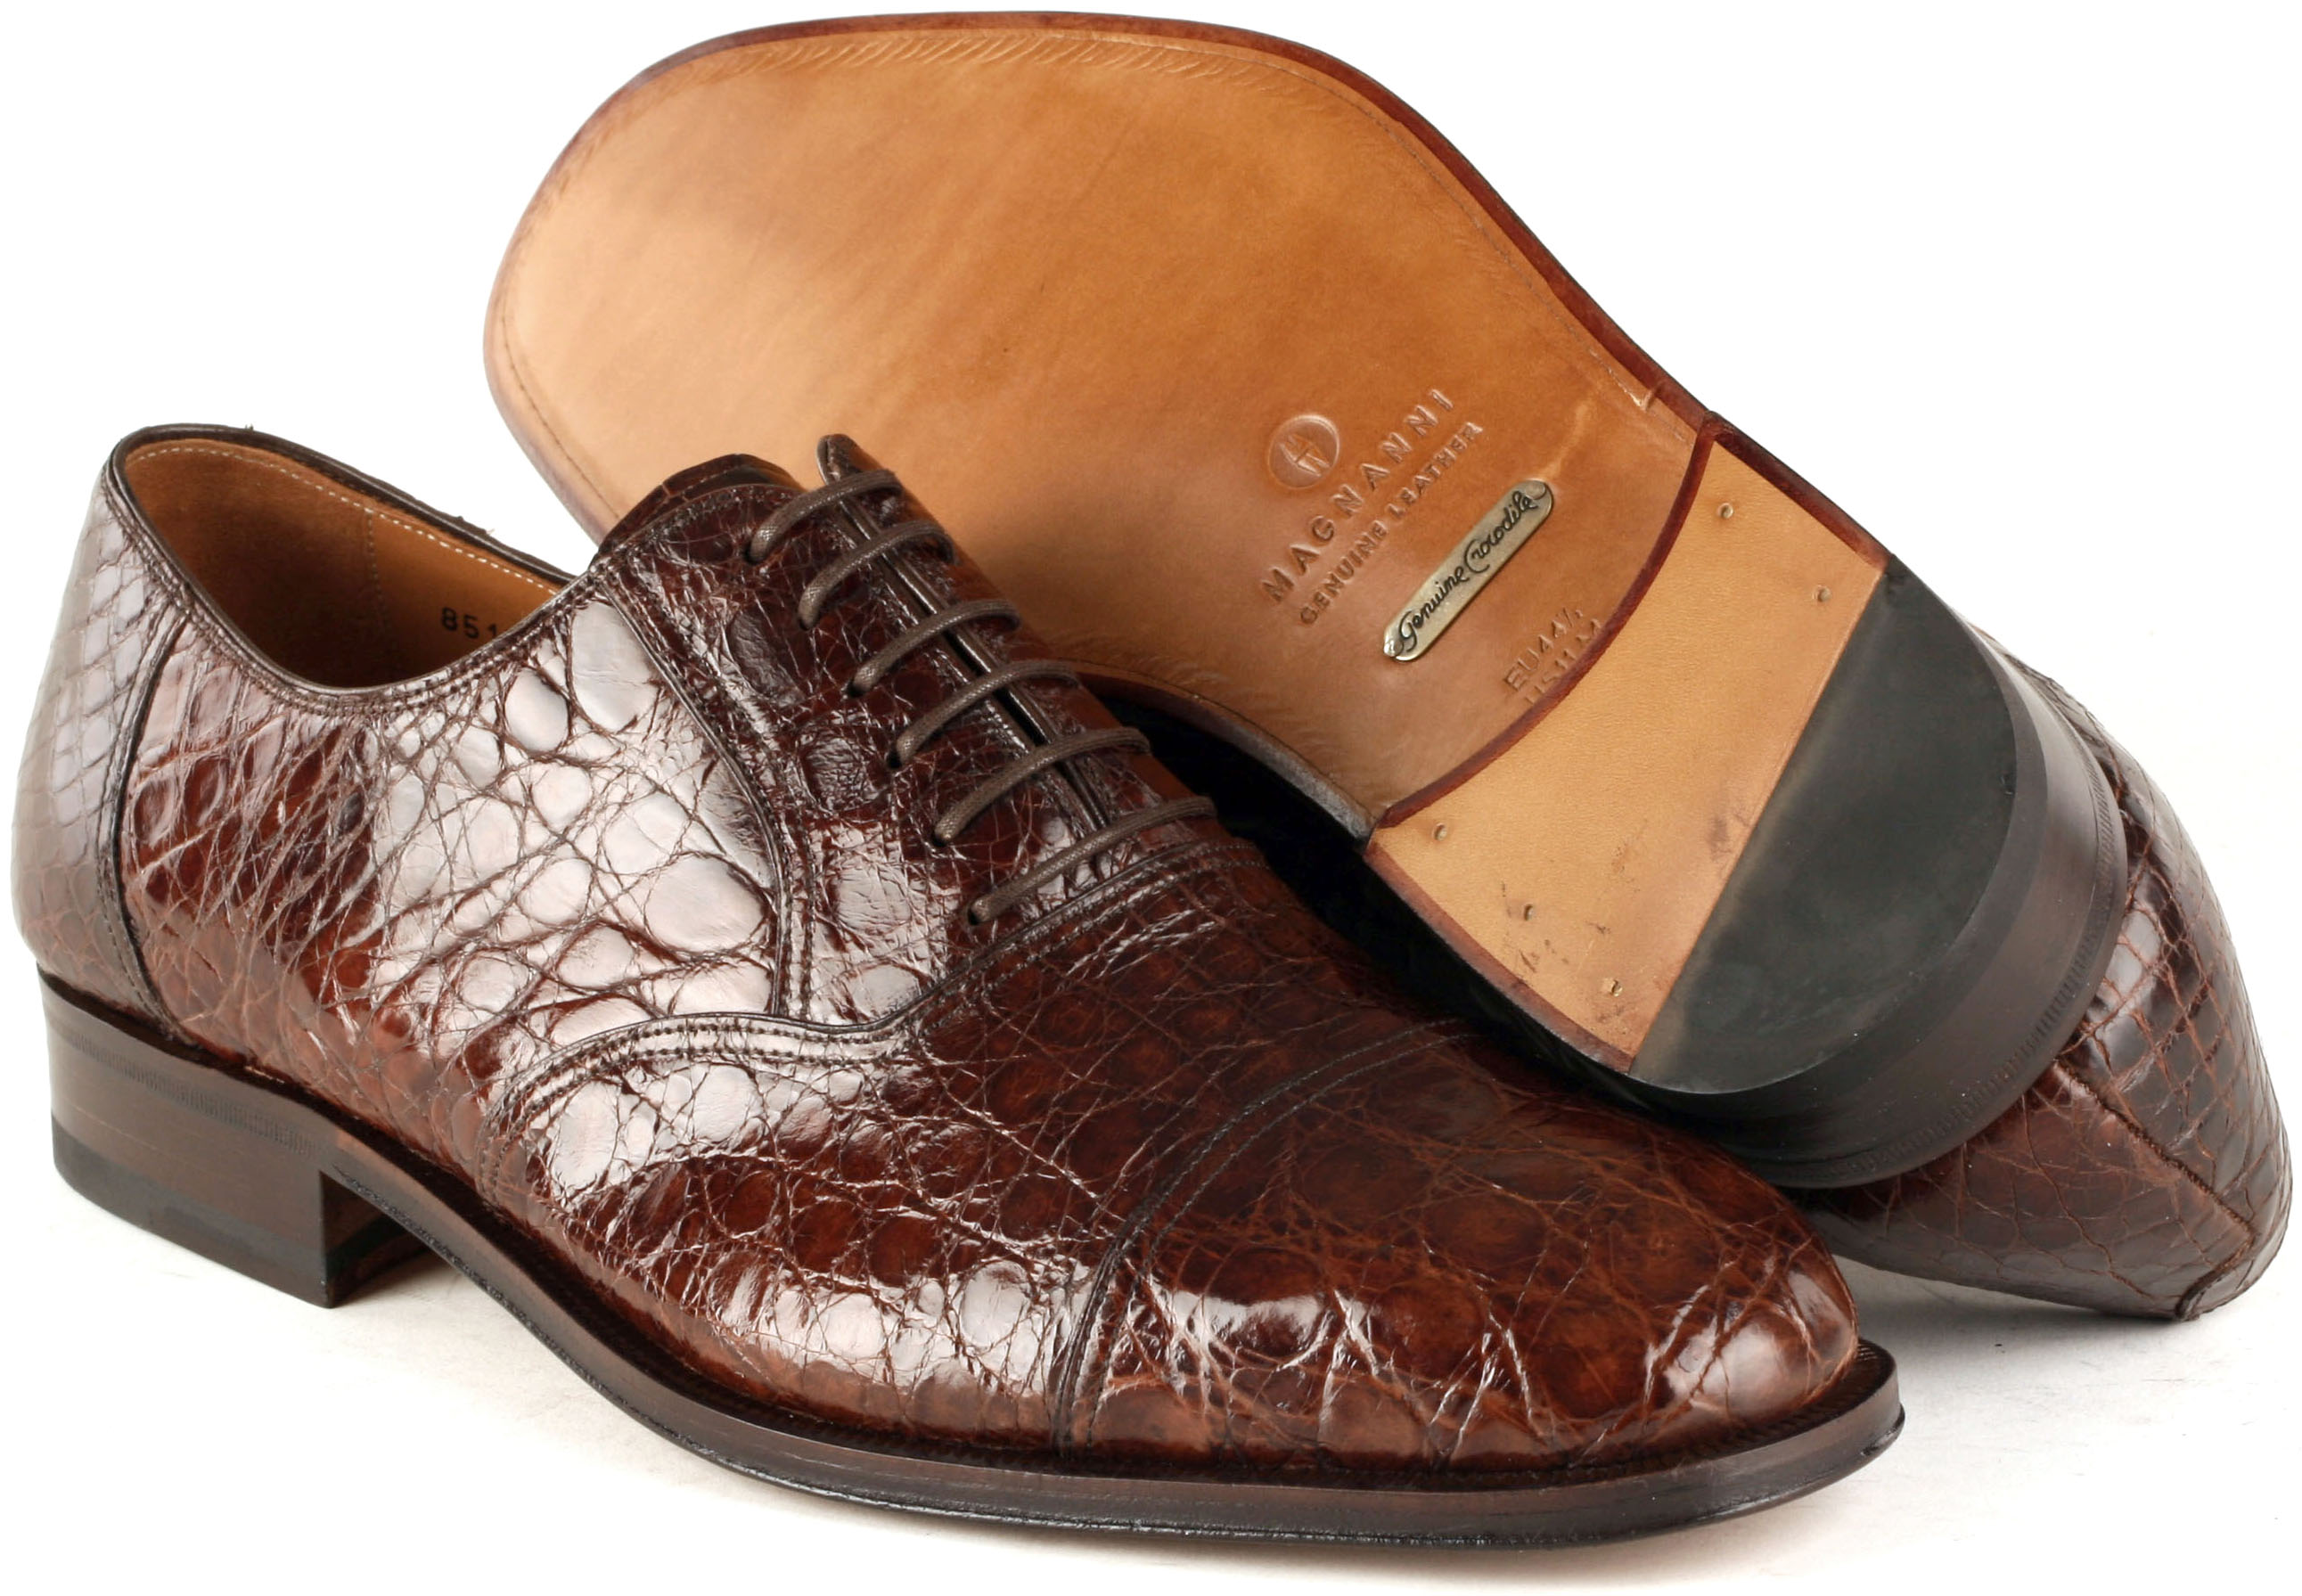 Pursuit of Excellence: Magnanni Shoe Quality